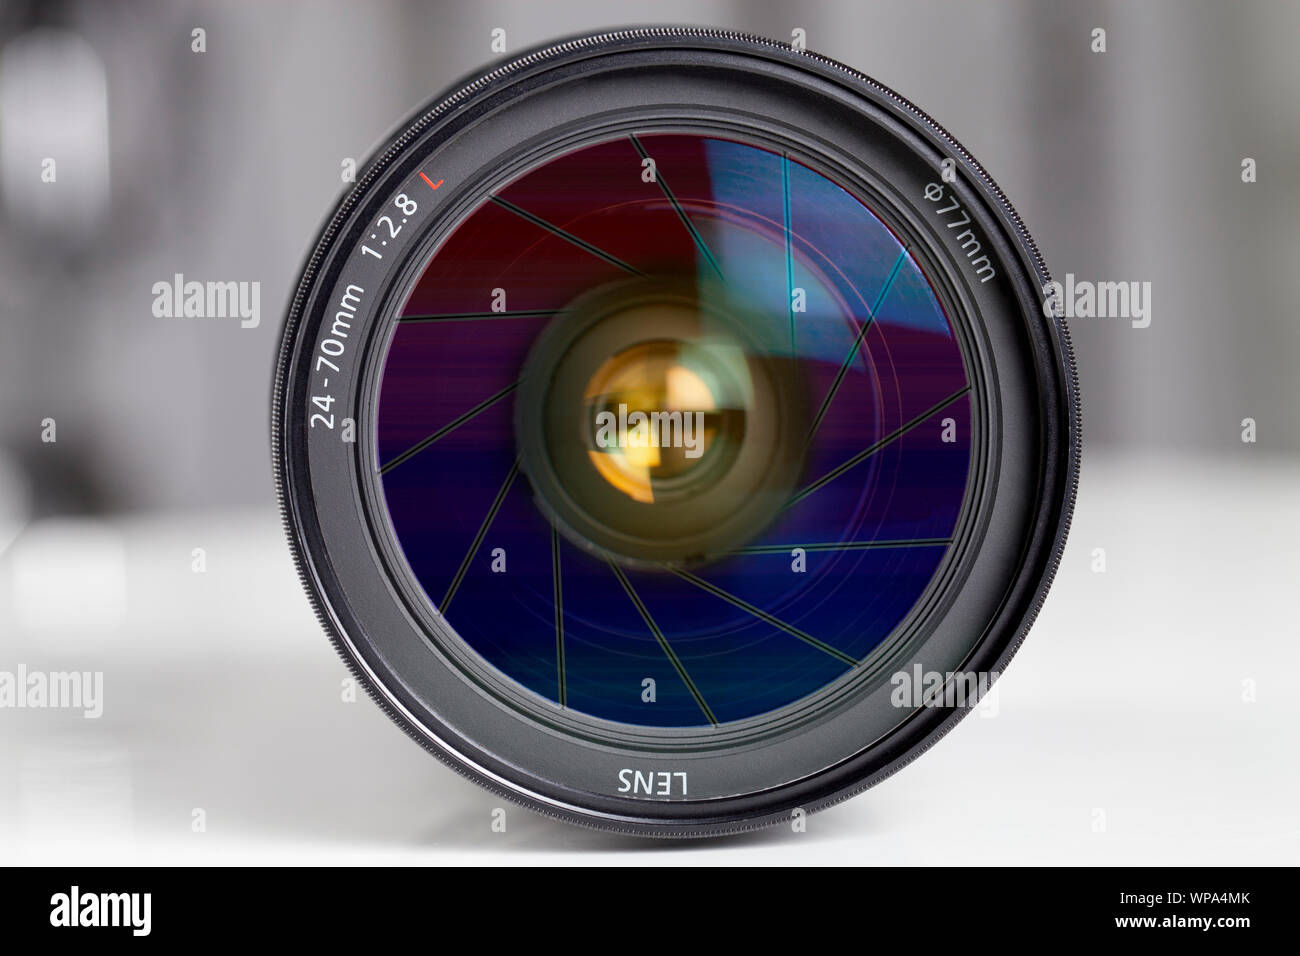 Close up of a digital camera lens Stock Photo